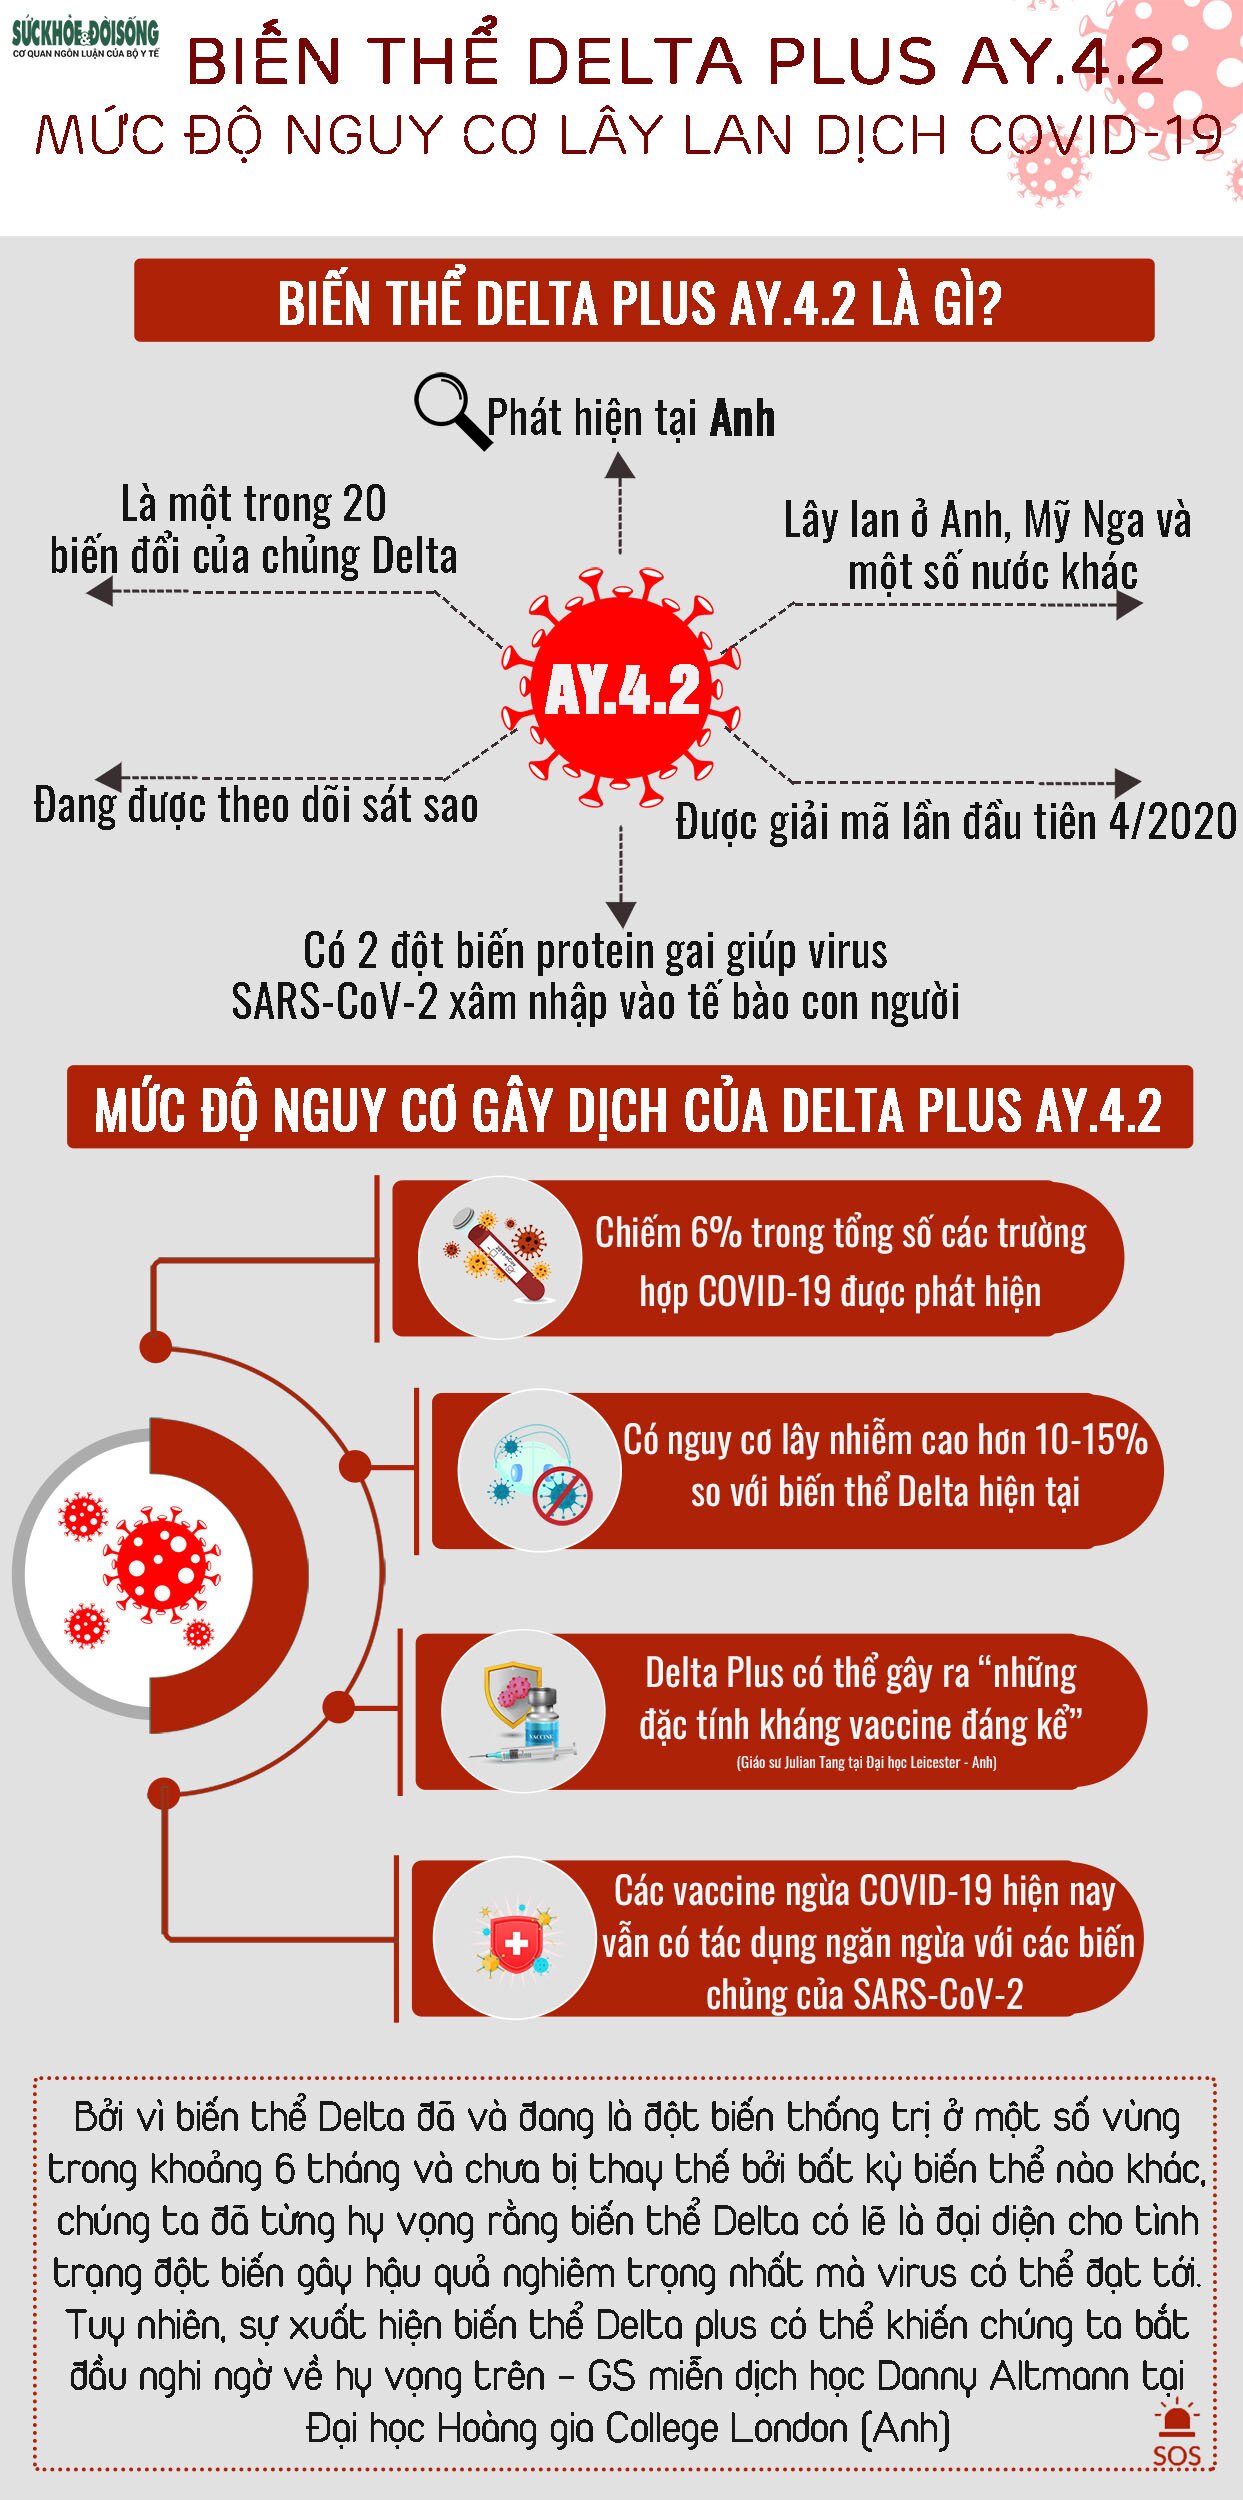 [Infographic] - Biến thể Delta Plus AY.4.2 và mức độ nguy cơ lây lan dịch COVID-19 - Ảnh 1.